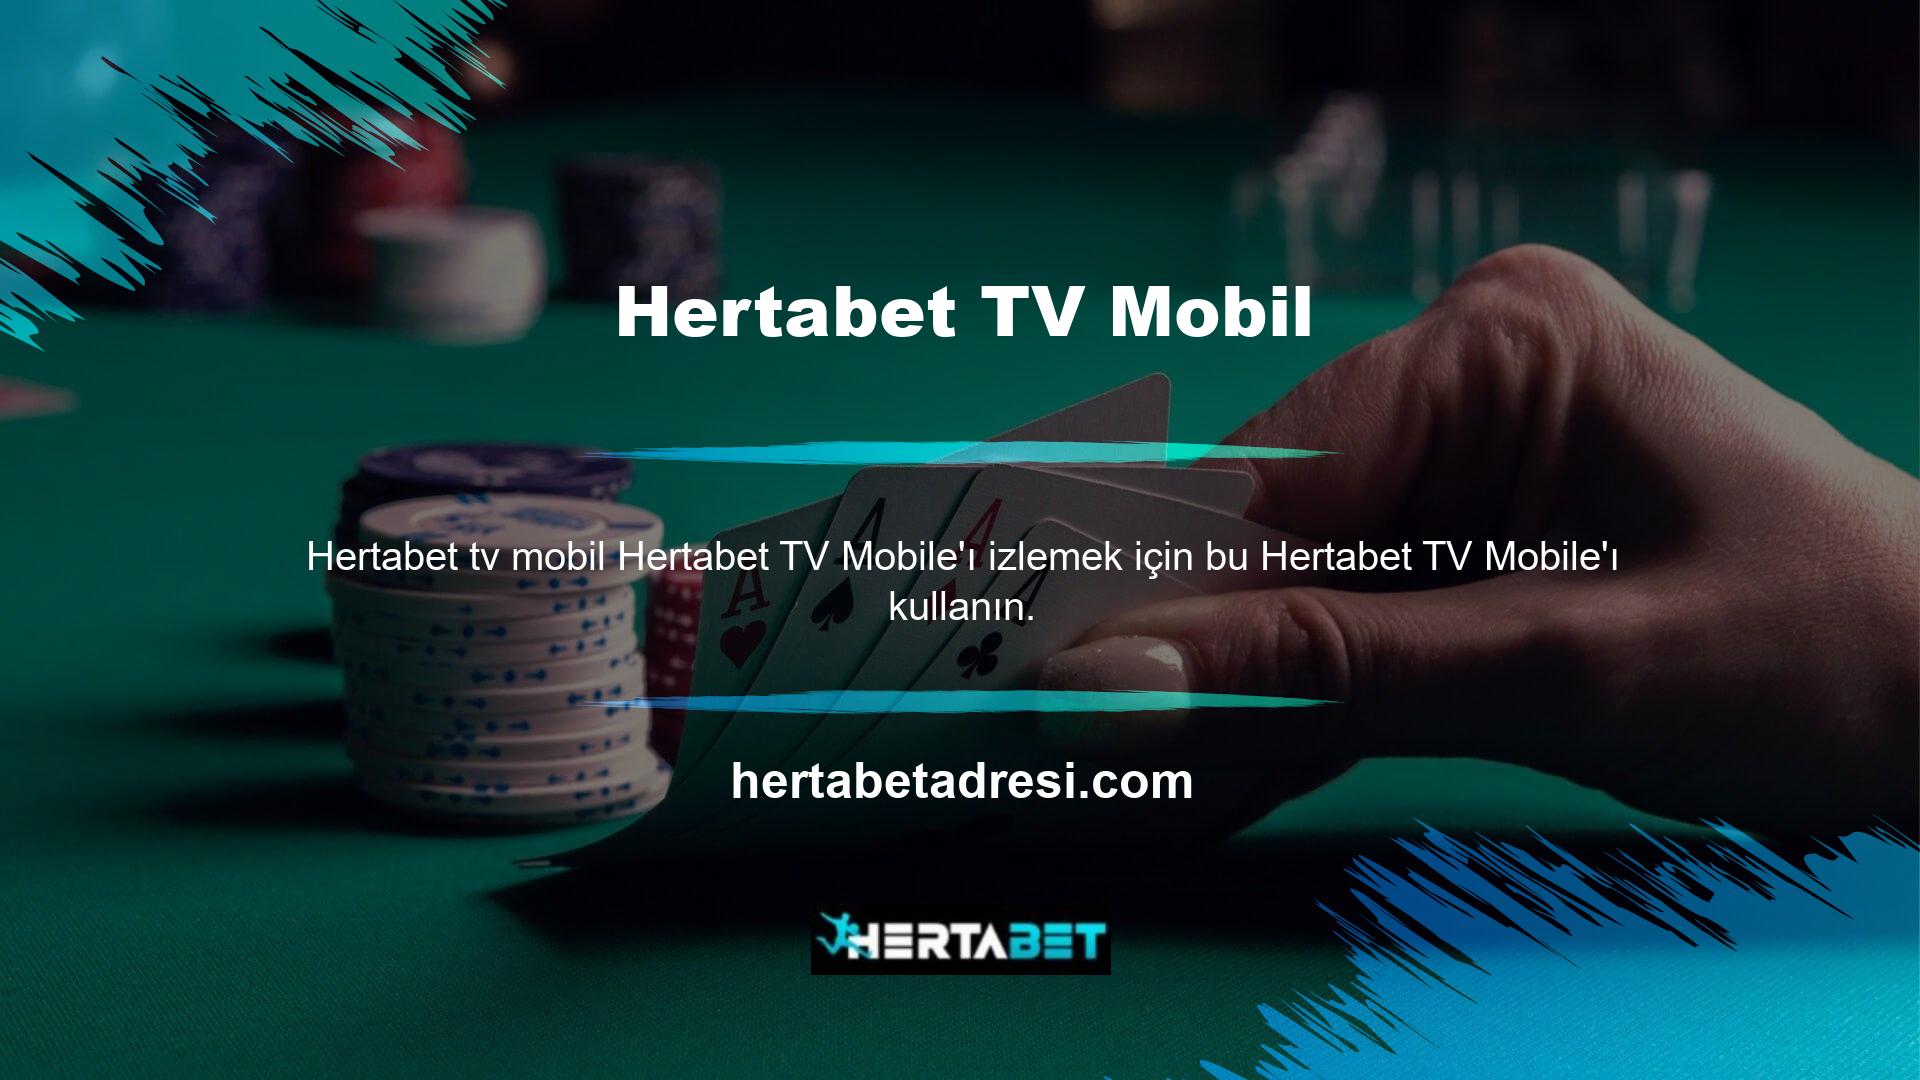 Mobil programları cep telefonlarına indirmek isteyen üyelerin Hertabet web sitesini ziyaret etmeleri gerekmektedir